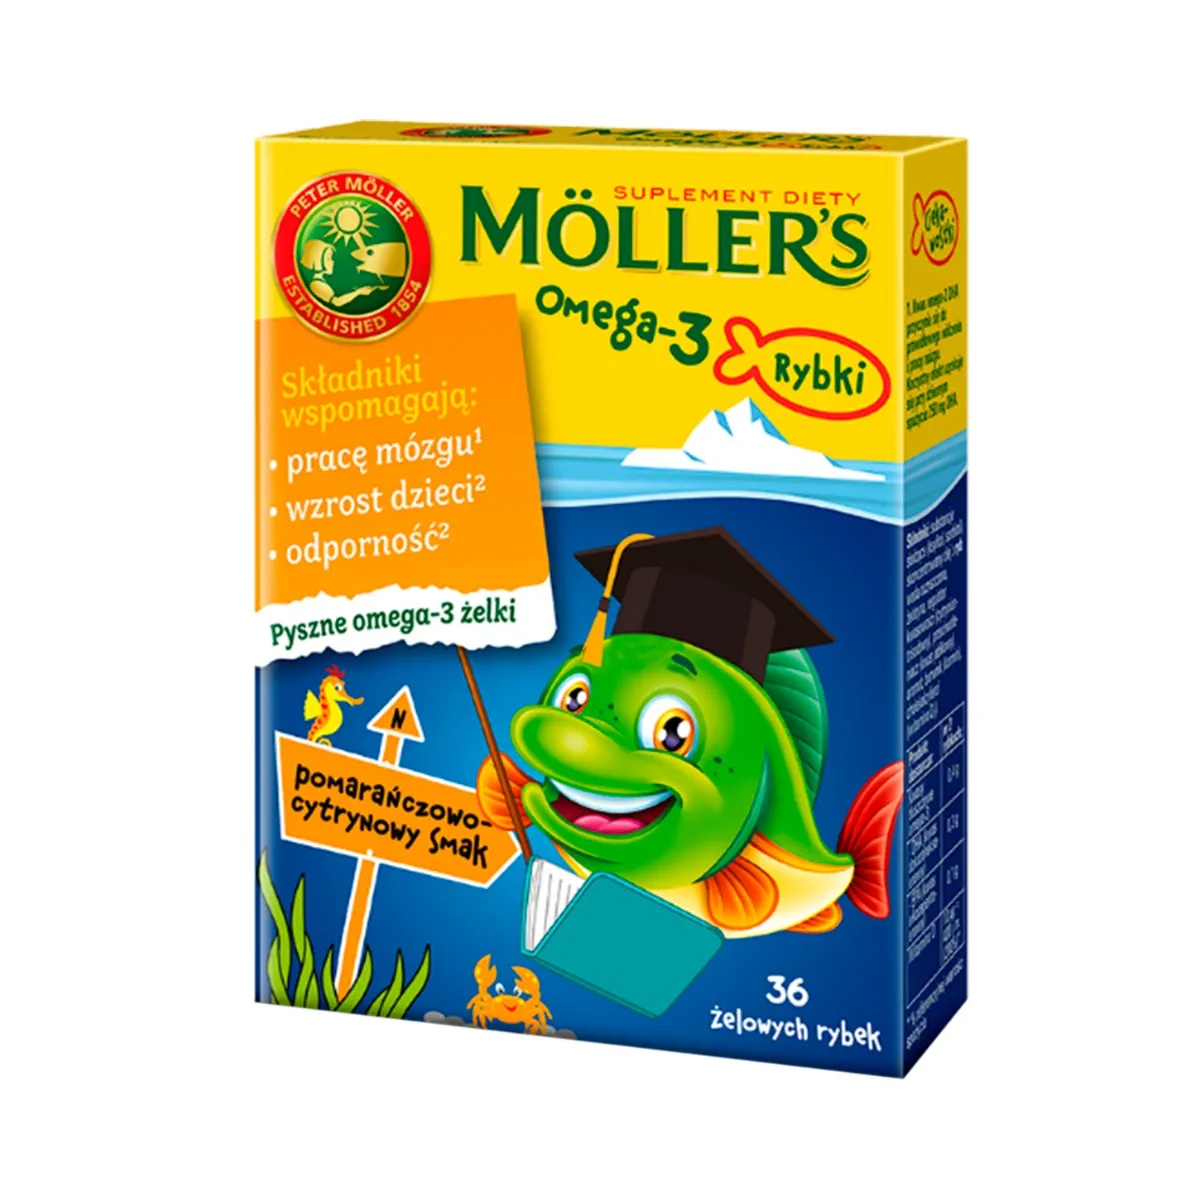 Moller's Omega-3 Rybki, suplement diety, smak pomarańczowo-cytrynowy, 36 żelków